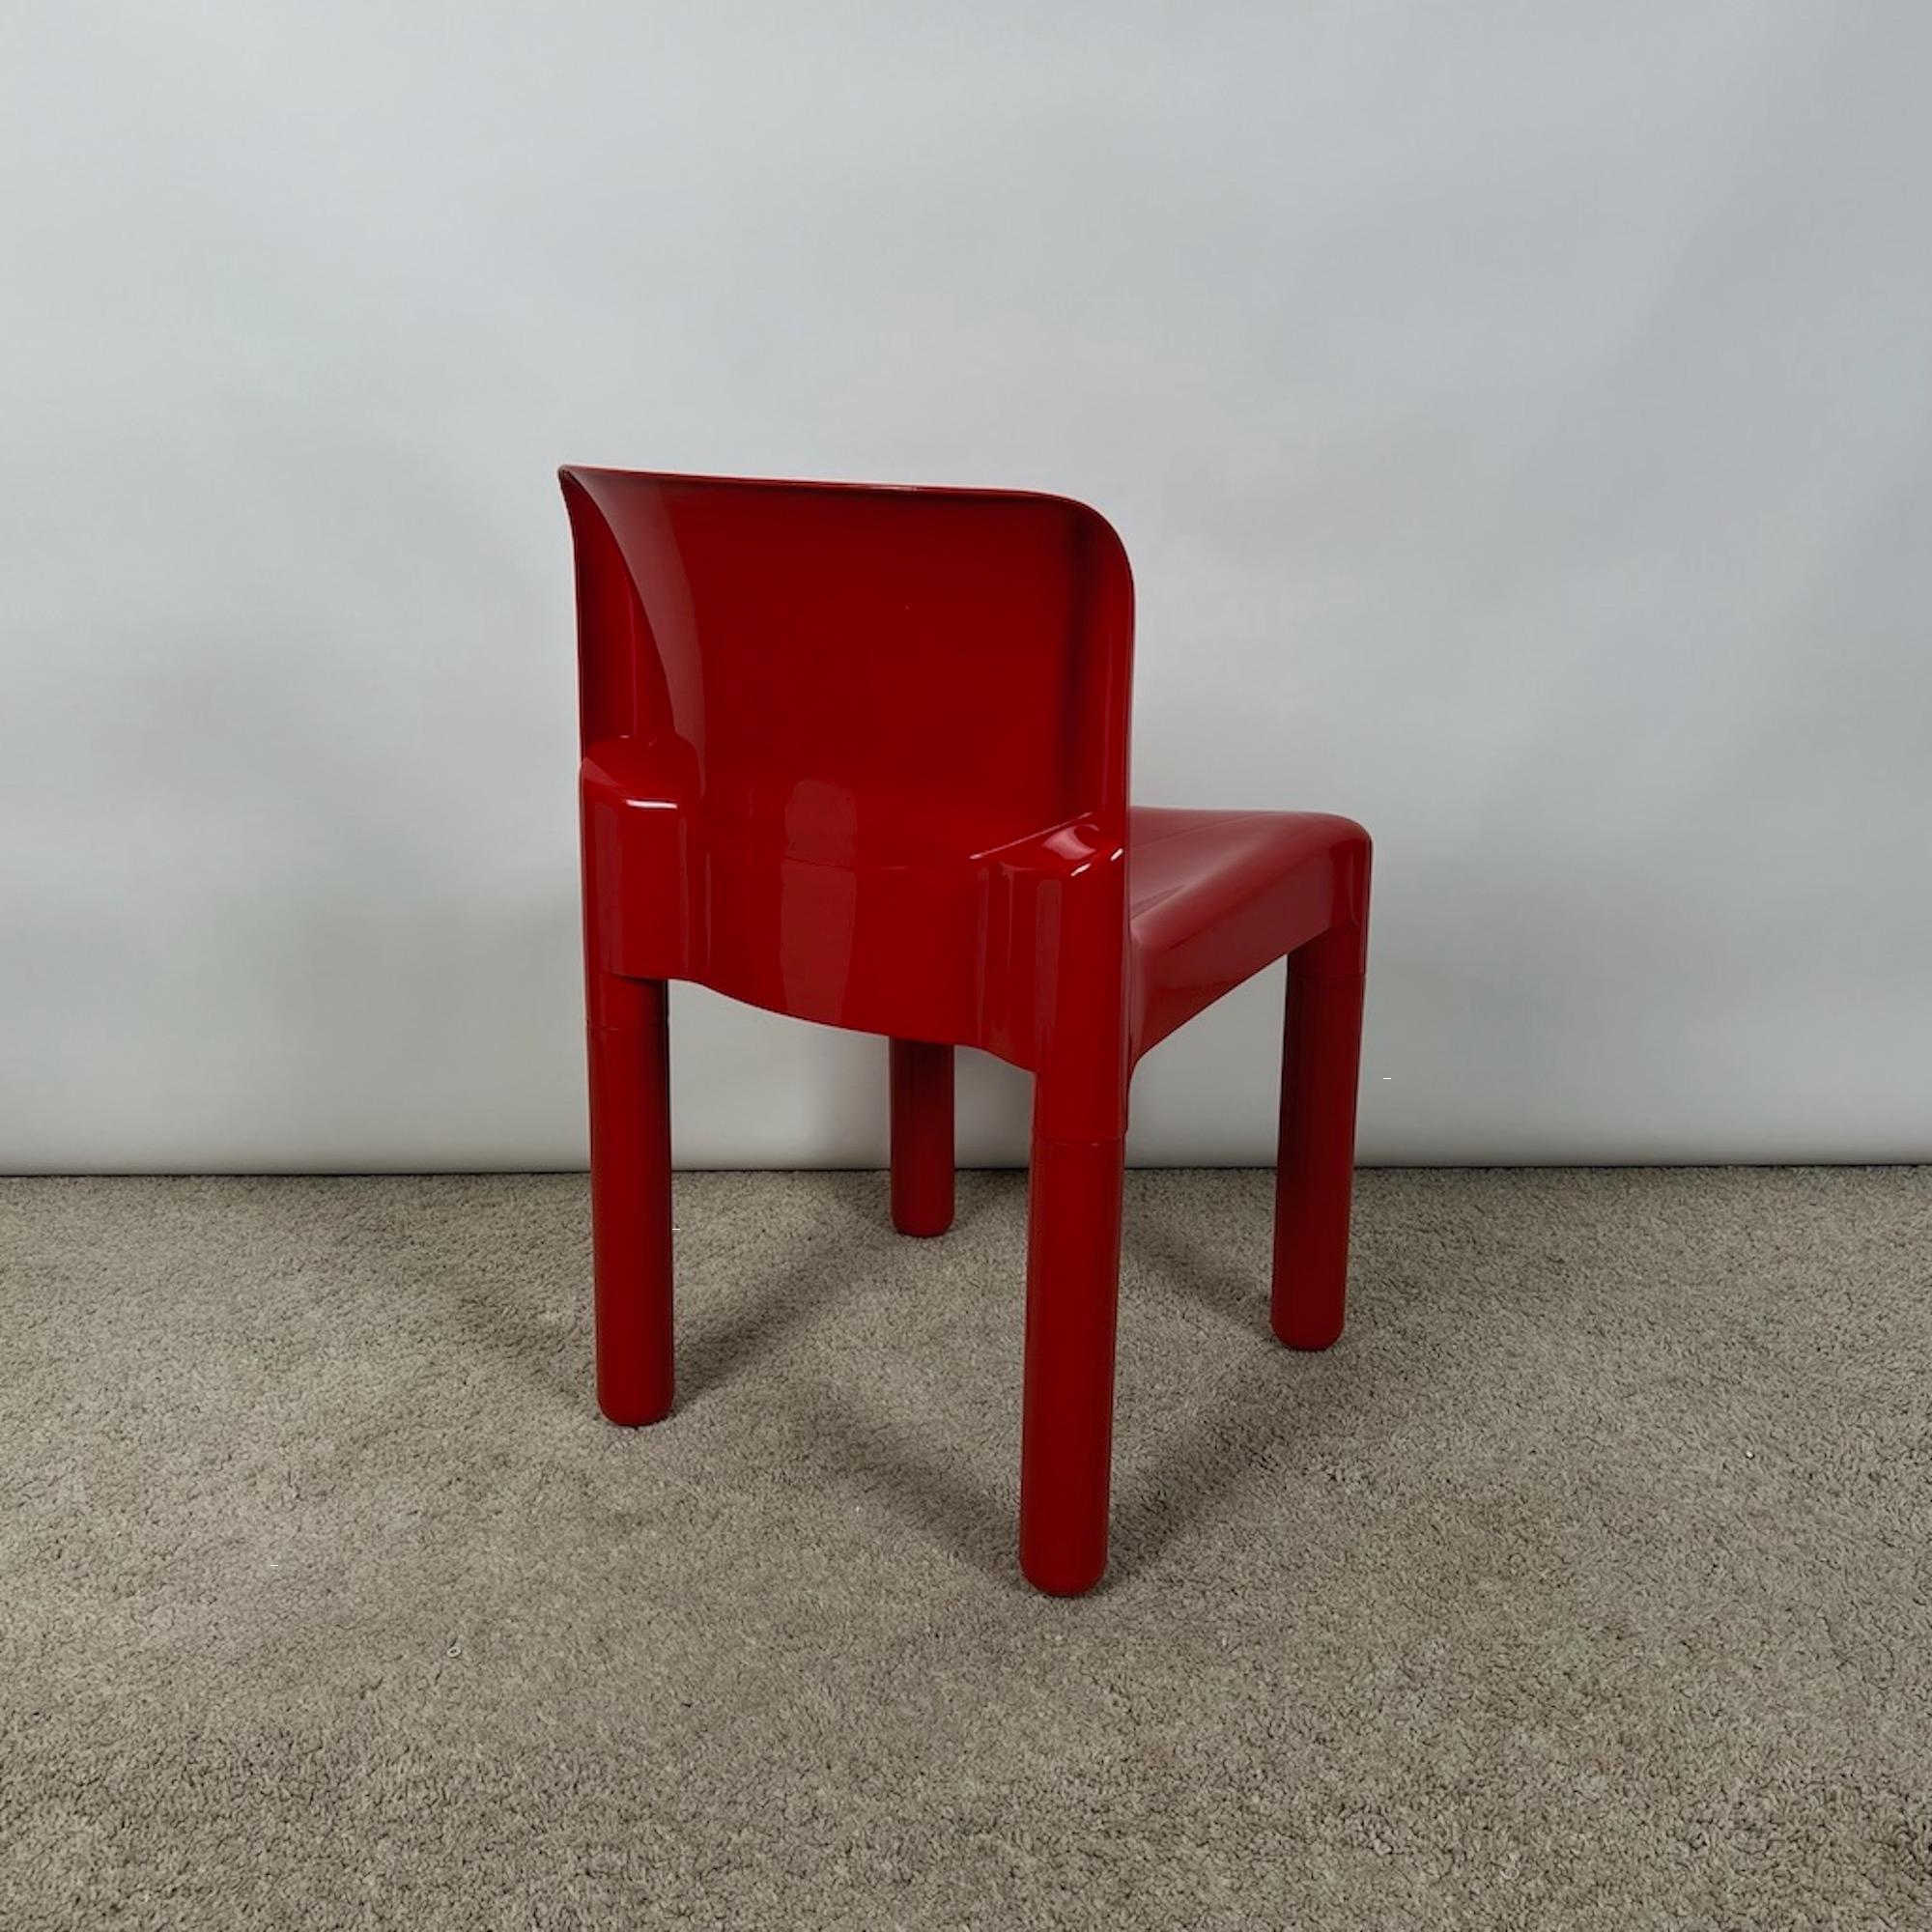 Schöner und seltener Stuhl, entworfen von Carlo Bartoli für Kartell in einem glänzenden Rotton.

Das Modell 4875 ist der erste Stuhl der Welt, der aus spritzgegossenem Polypropylen hergestellt wird. Carlo Bartoli entwarf ihn 1970, Kartell begann